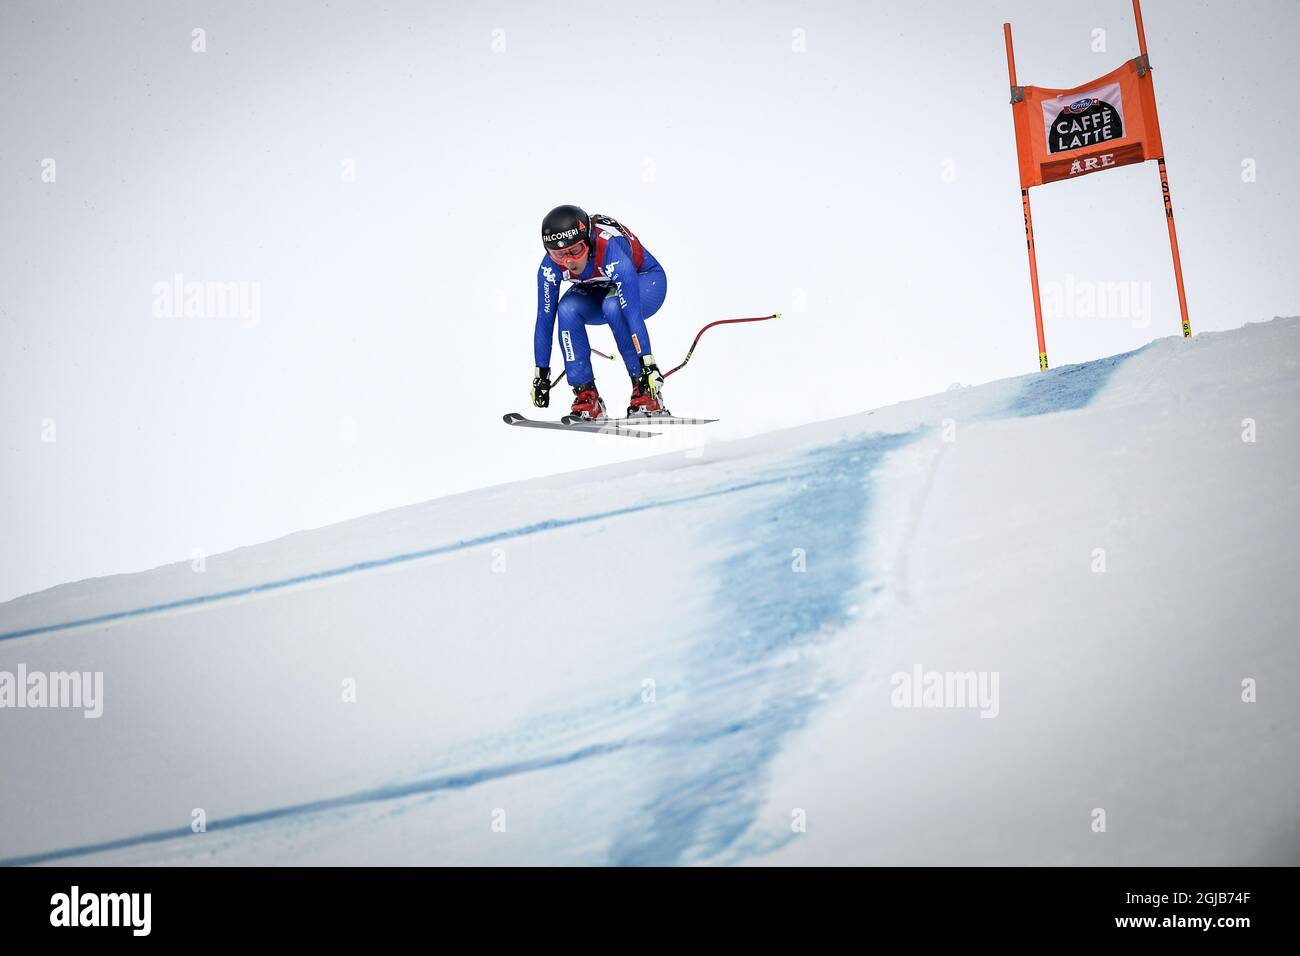 Sofia Goggia aus Italien in Aktion während ihres Rennens beim FIS Downhill World Cup Finale in are, Schweden, am 14. März 2018. Foto: Pontus Lundahl / TT / 10050 Stockfoto